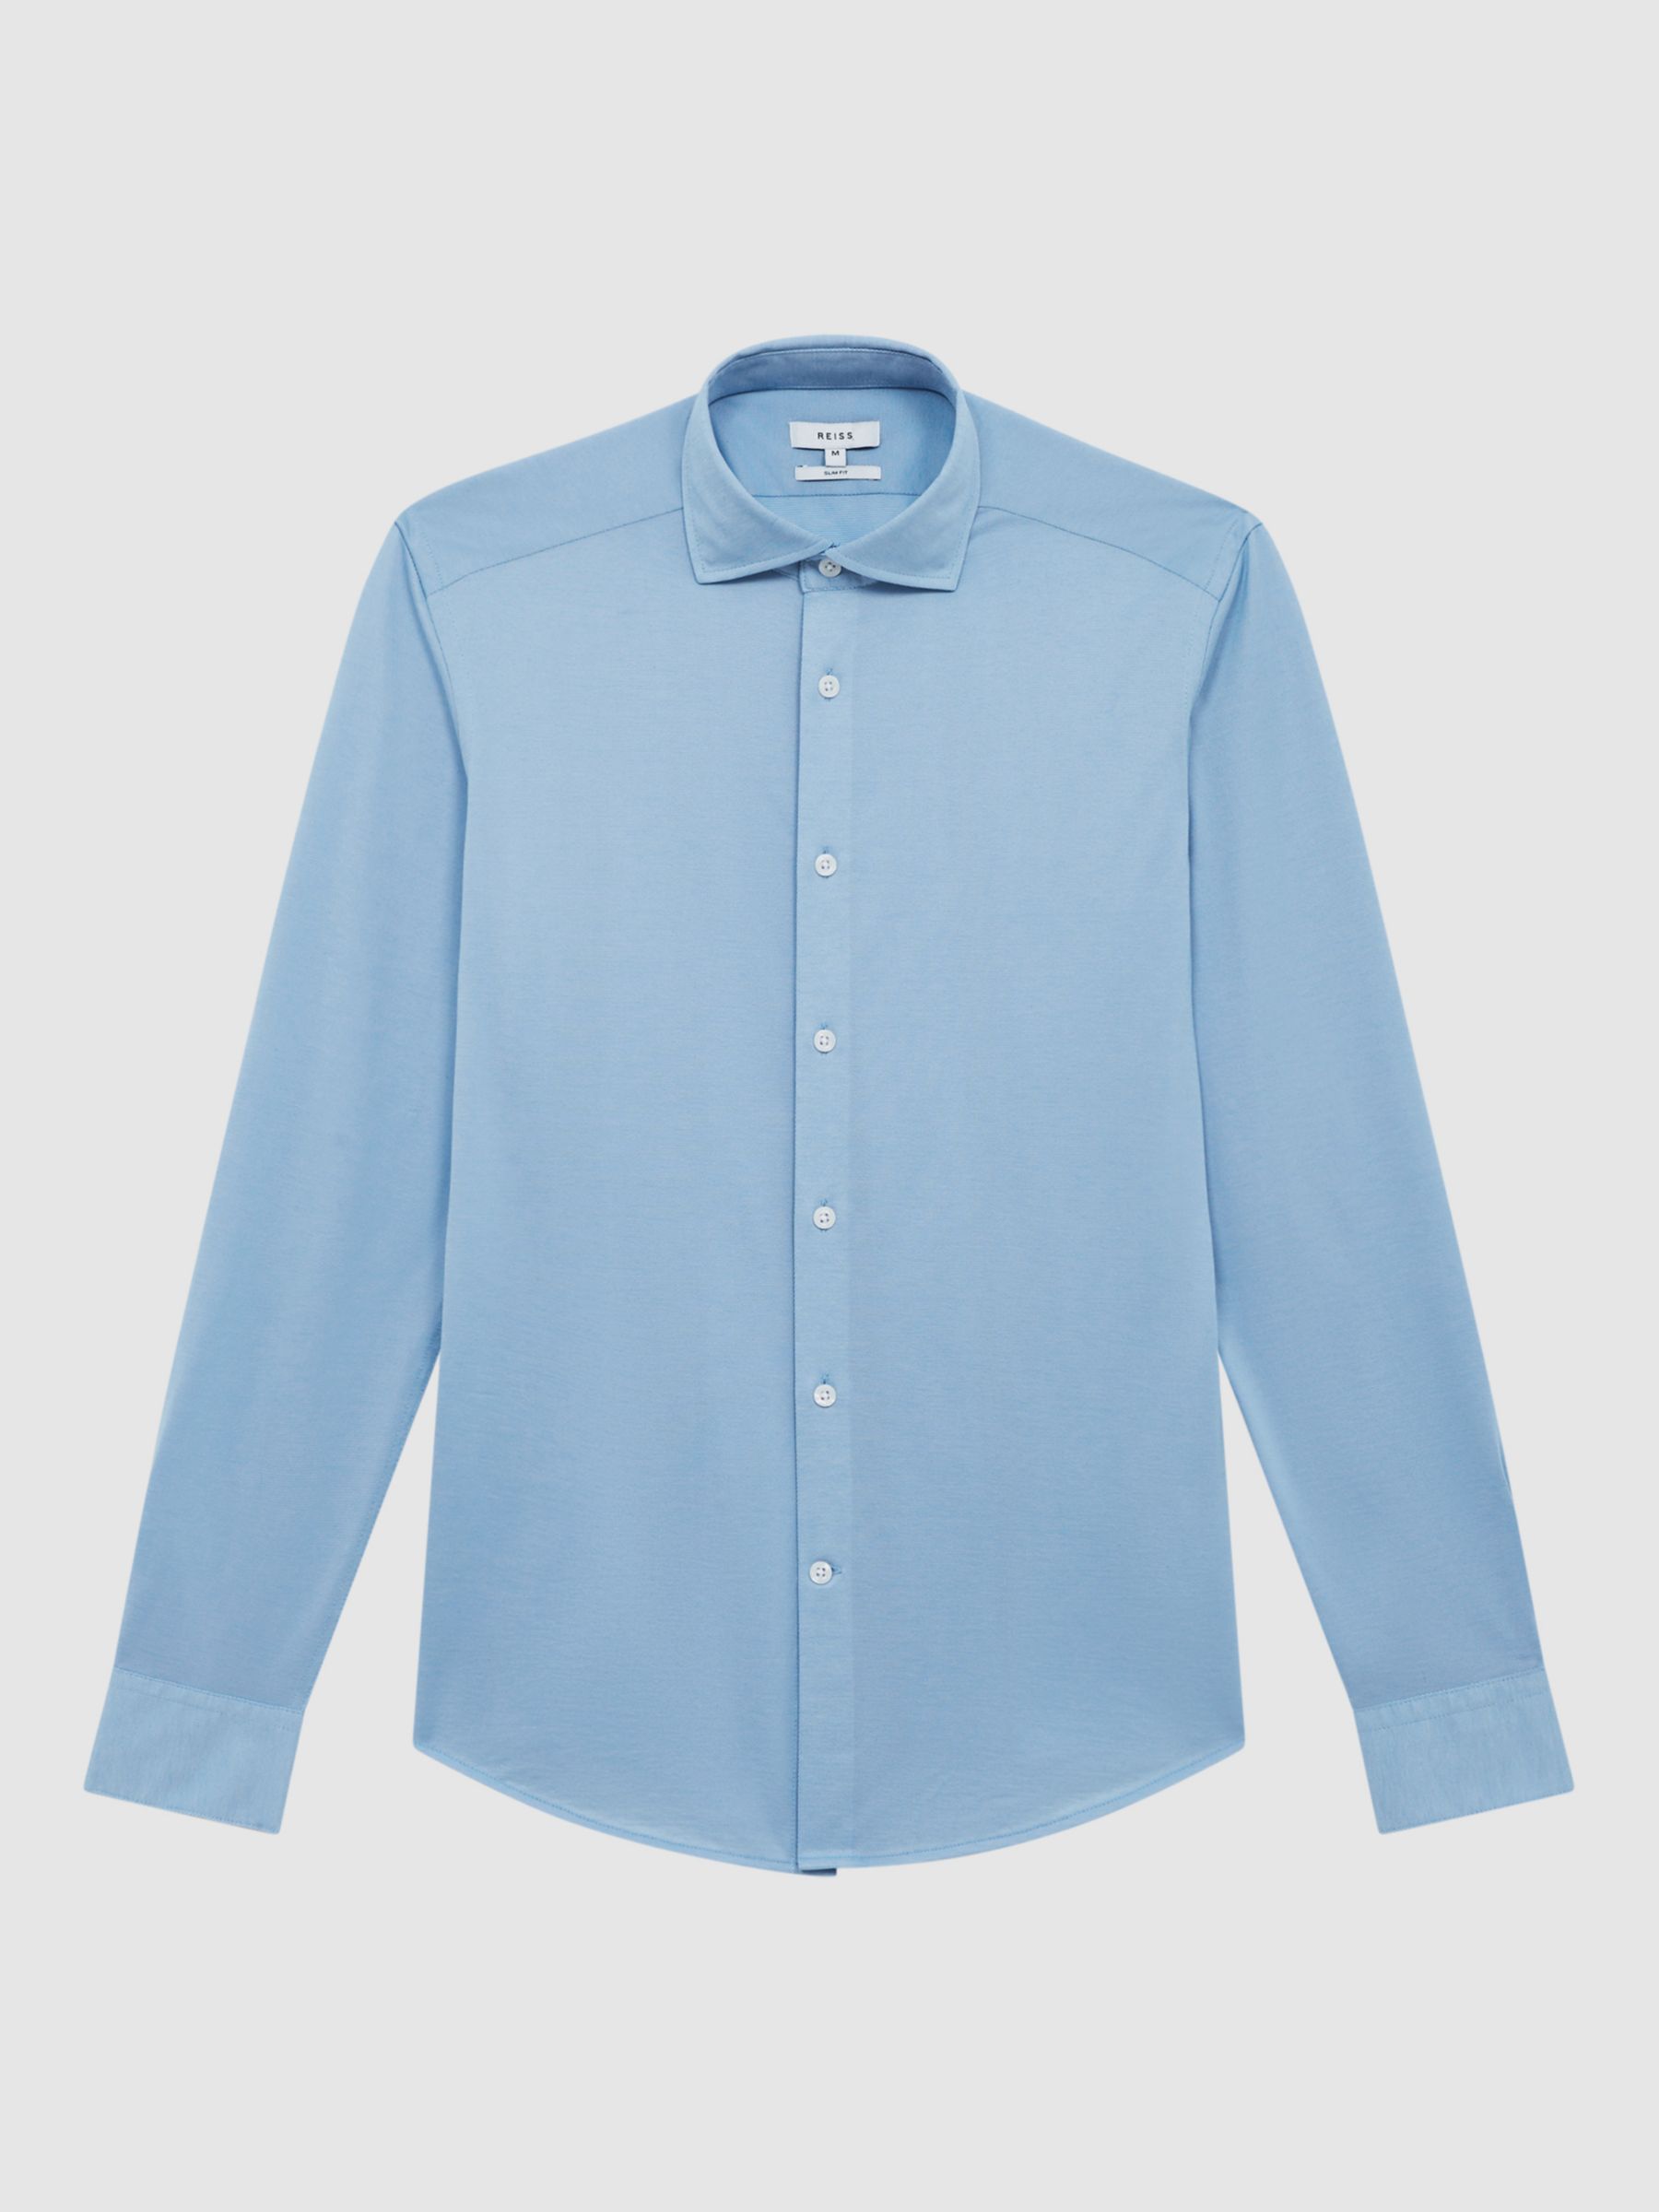 Reiss Nate Slim Fit Cutaway Collar Jersey Shirt, Soft Blue, XS